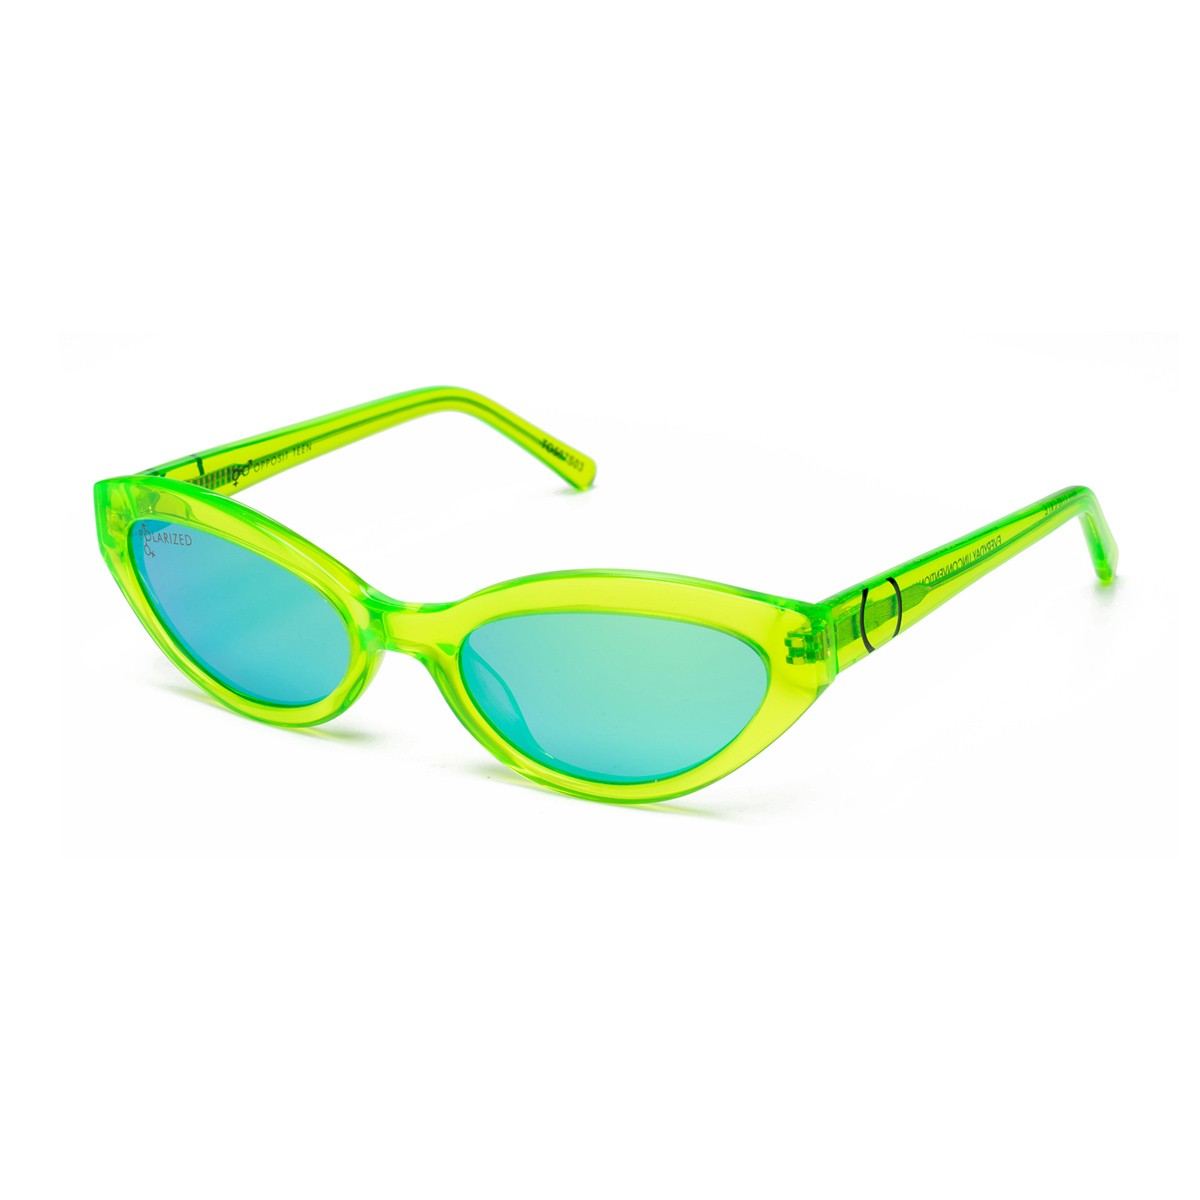 Opposit Teen TO507S | Kids sunglasses